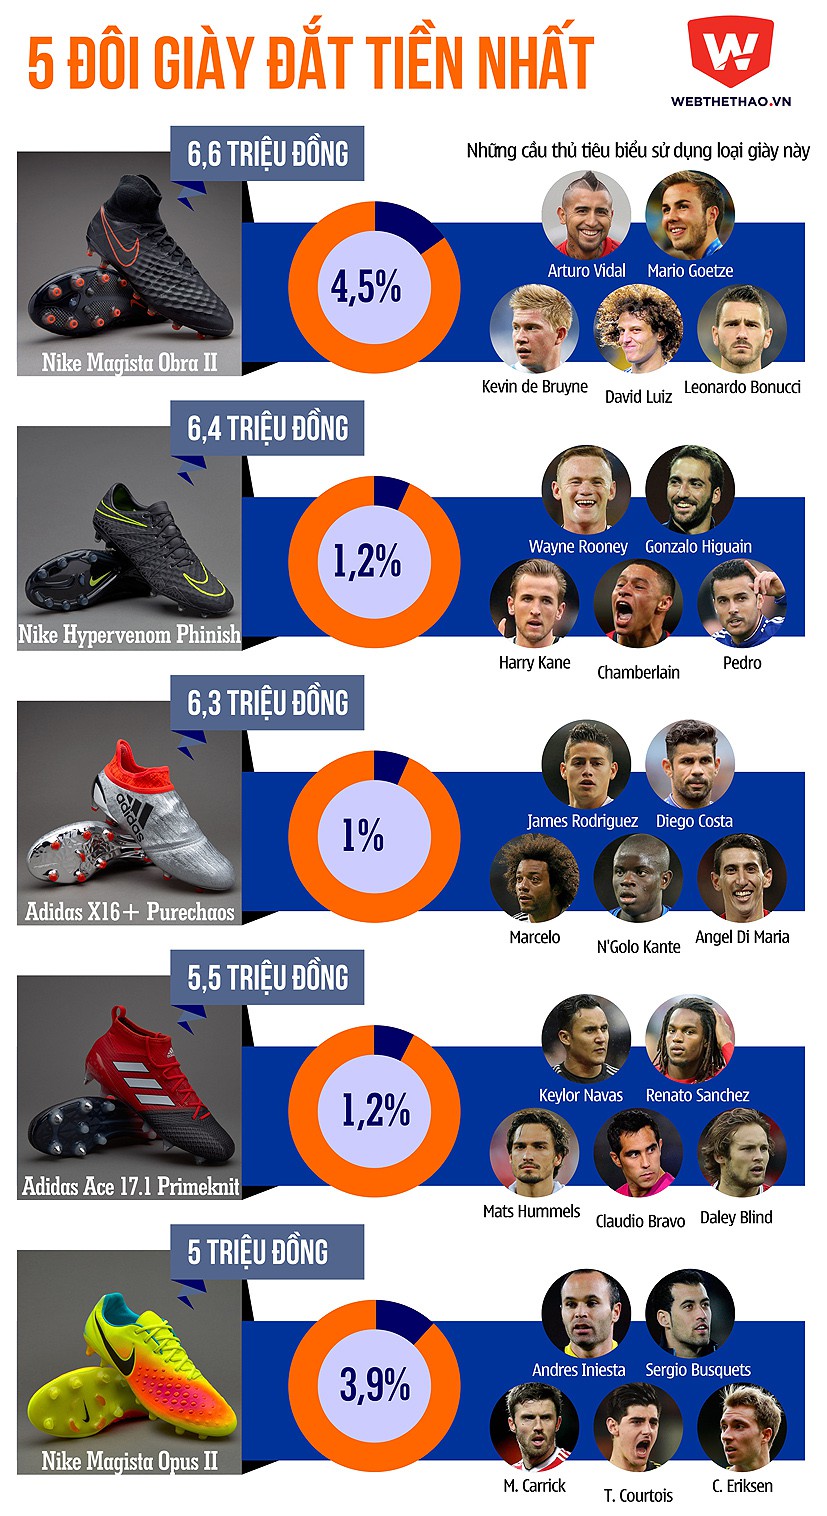 Gareth Bale đi giày rẻ tiền hơn cả sao V.League